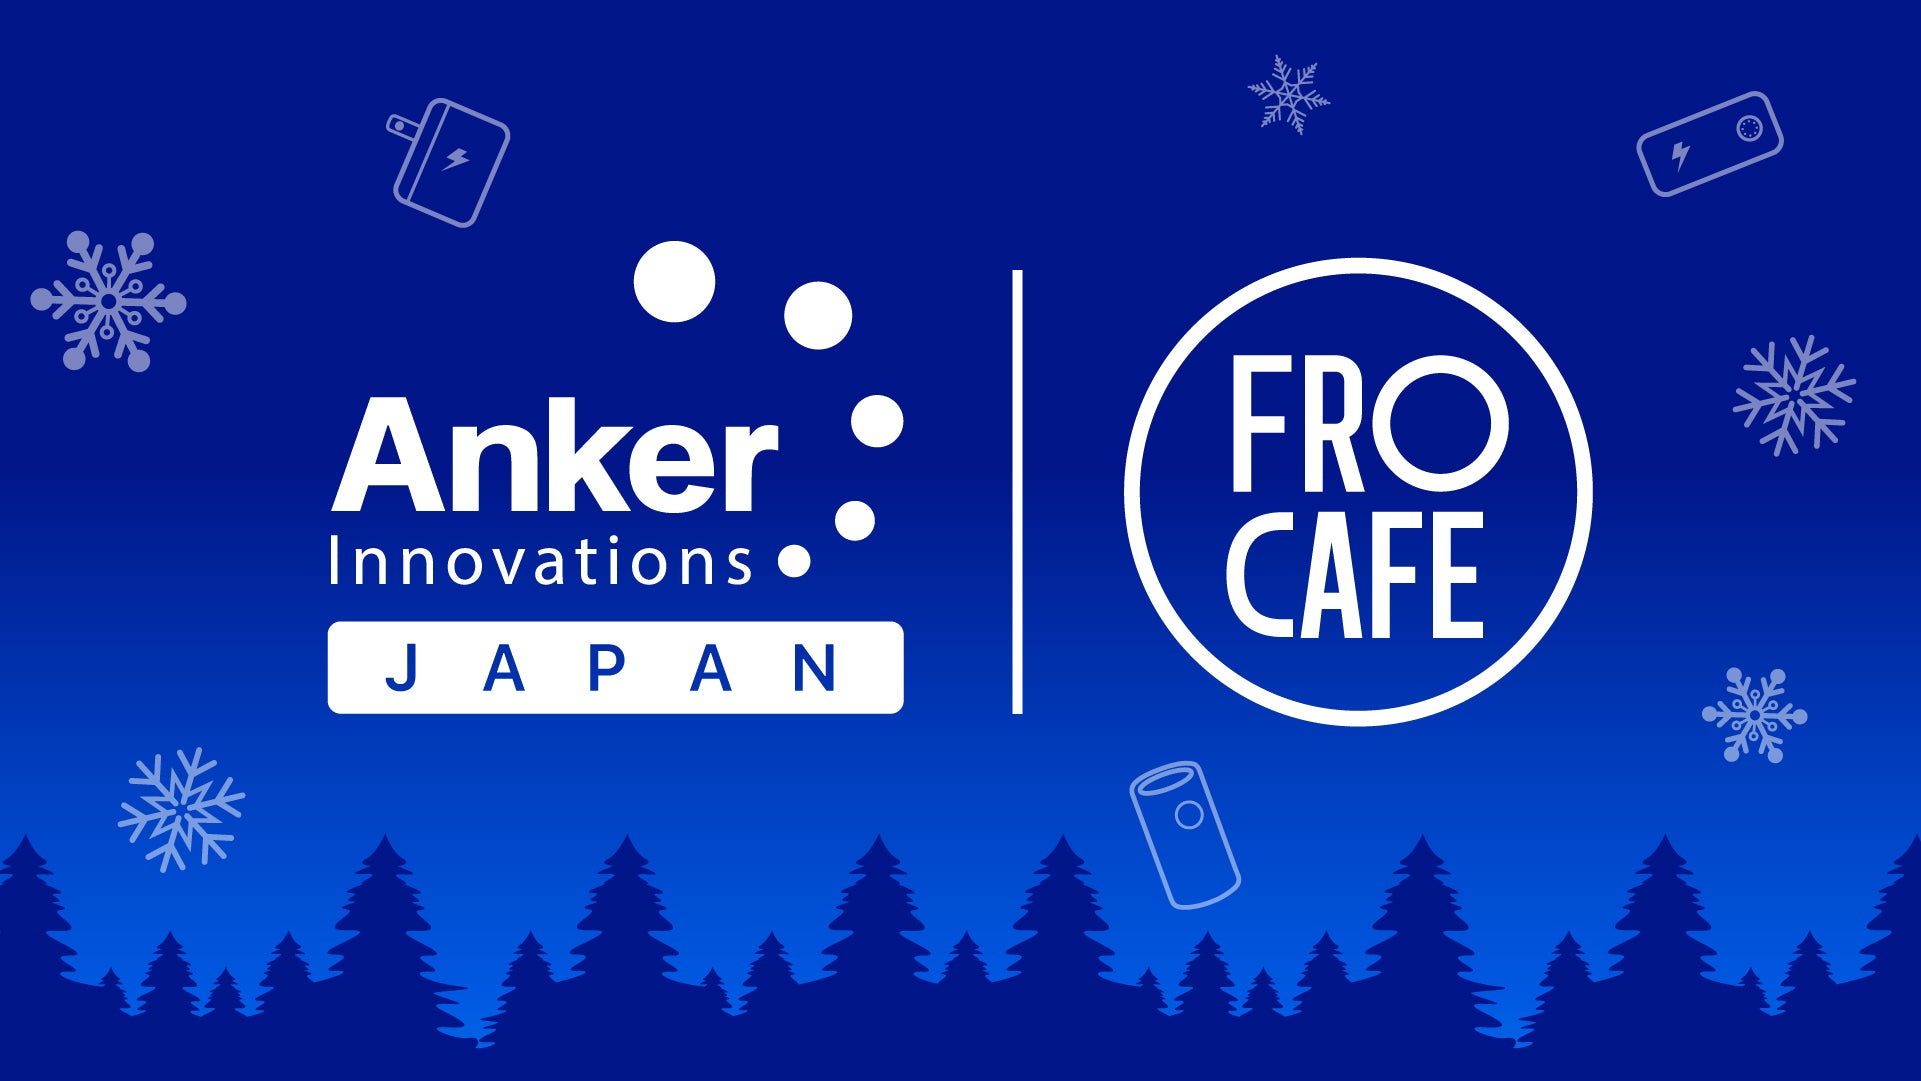 川崎フロンターレ「FRO CAFÉ」×アンカー・ジャパン